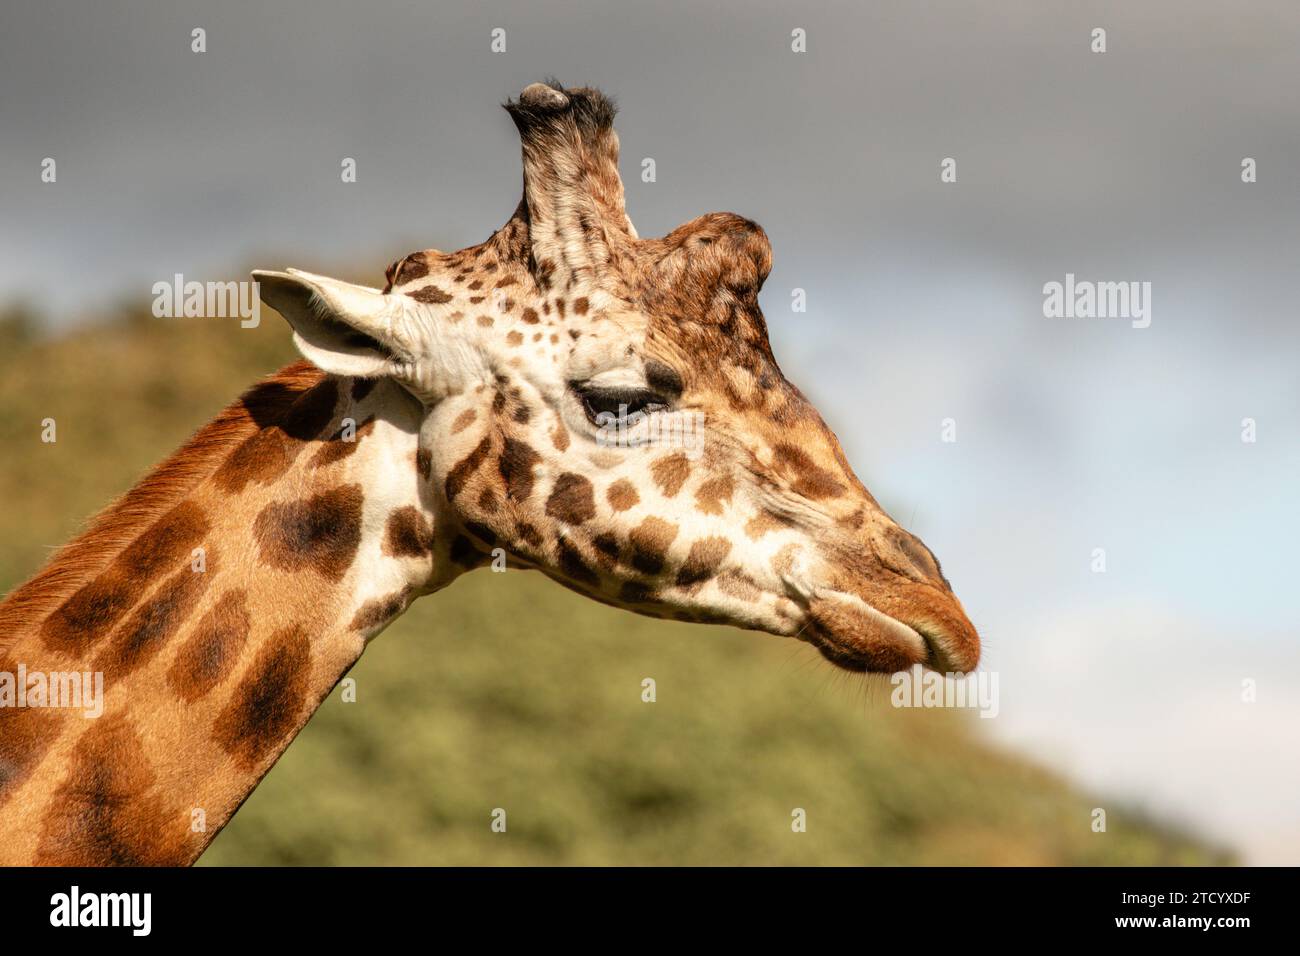 Ein Nahaufnahme-Profilporträt einer Giraffe. Es zeigt den Kopf und den oberen Teil des Halses und es gibt Platz für Text um das Tier Stockfoto